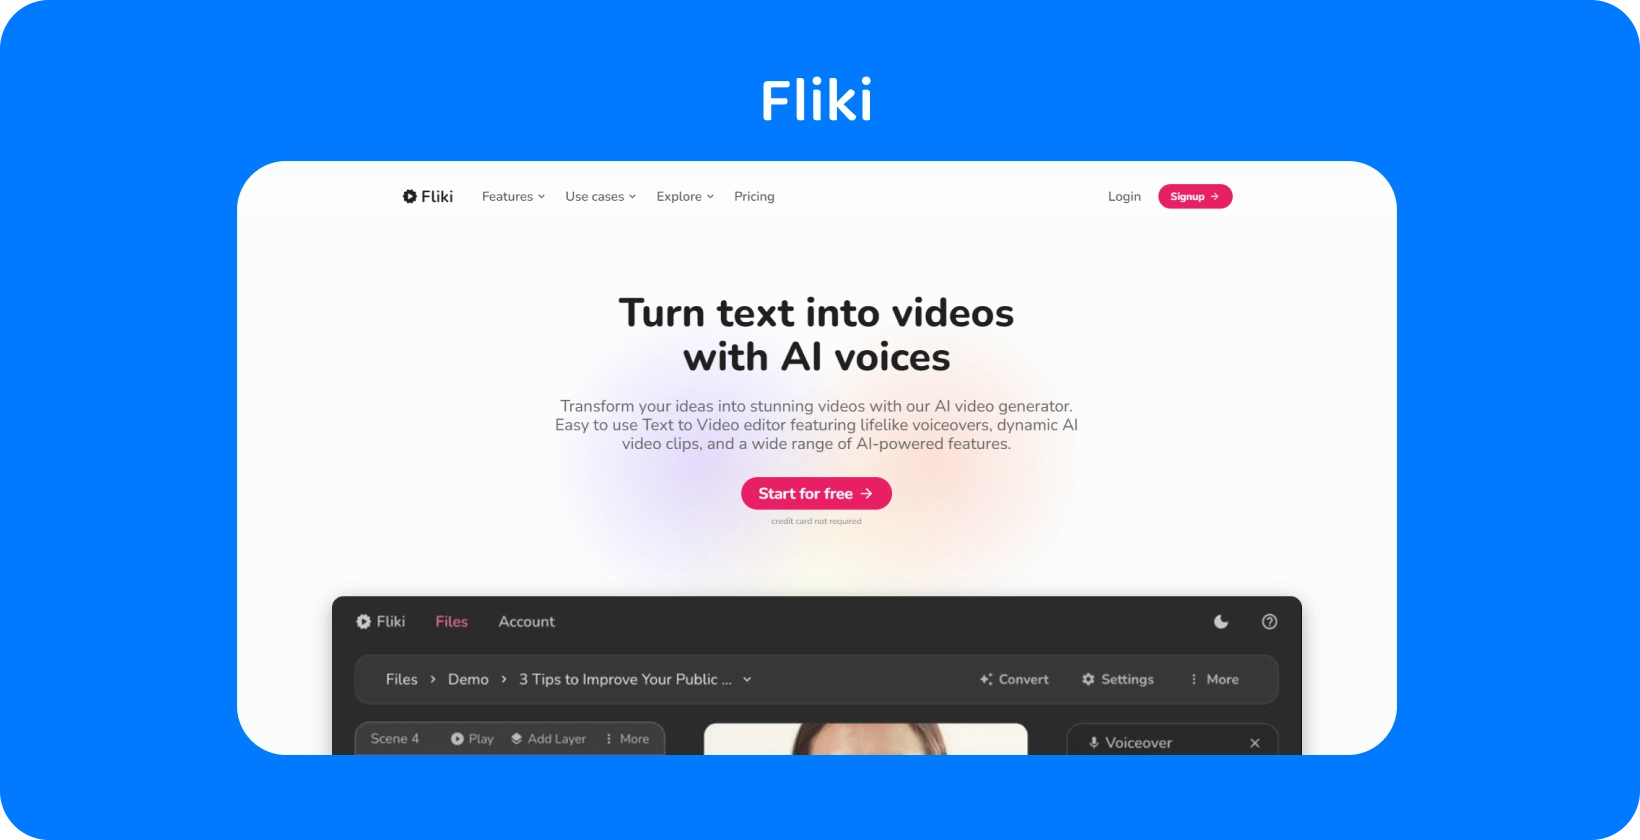 דף הפלטפורמה של Fliki מראה כיצד להפוך טקסט לסרטונים עם קולות AI, ומציע חוויית עריכת טקסט לווידיאו.